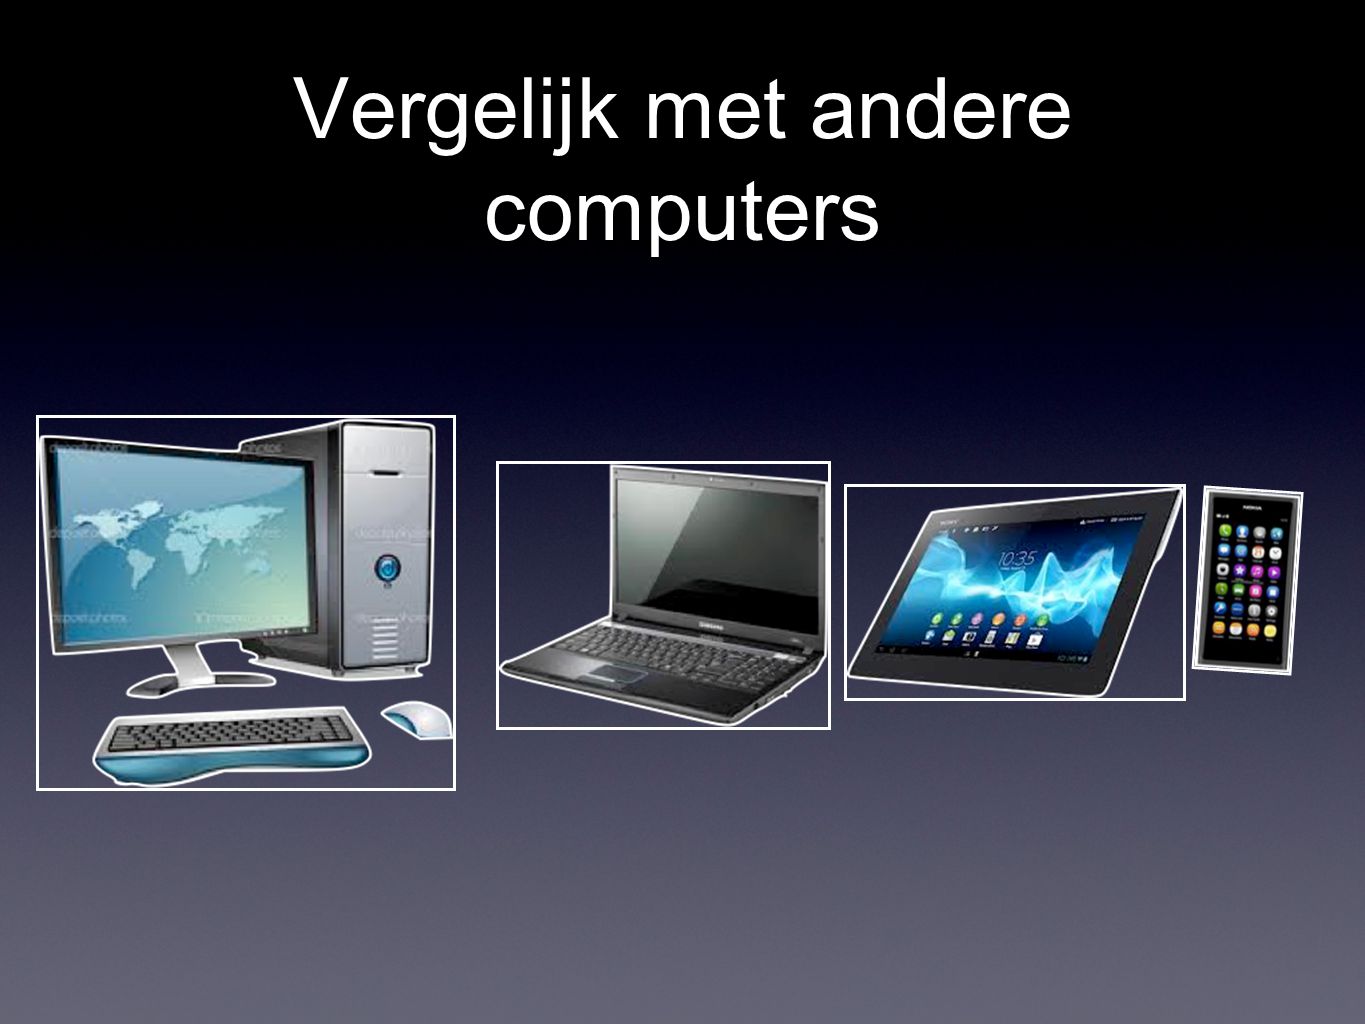 Vergelijk met andere computers